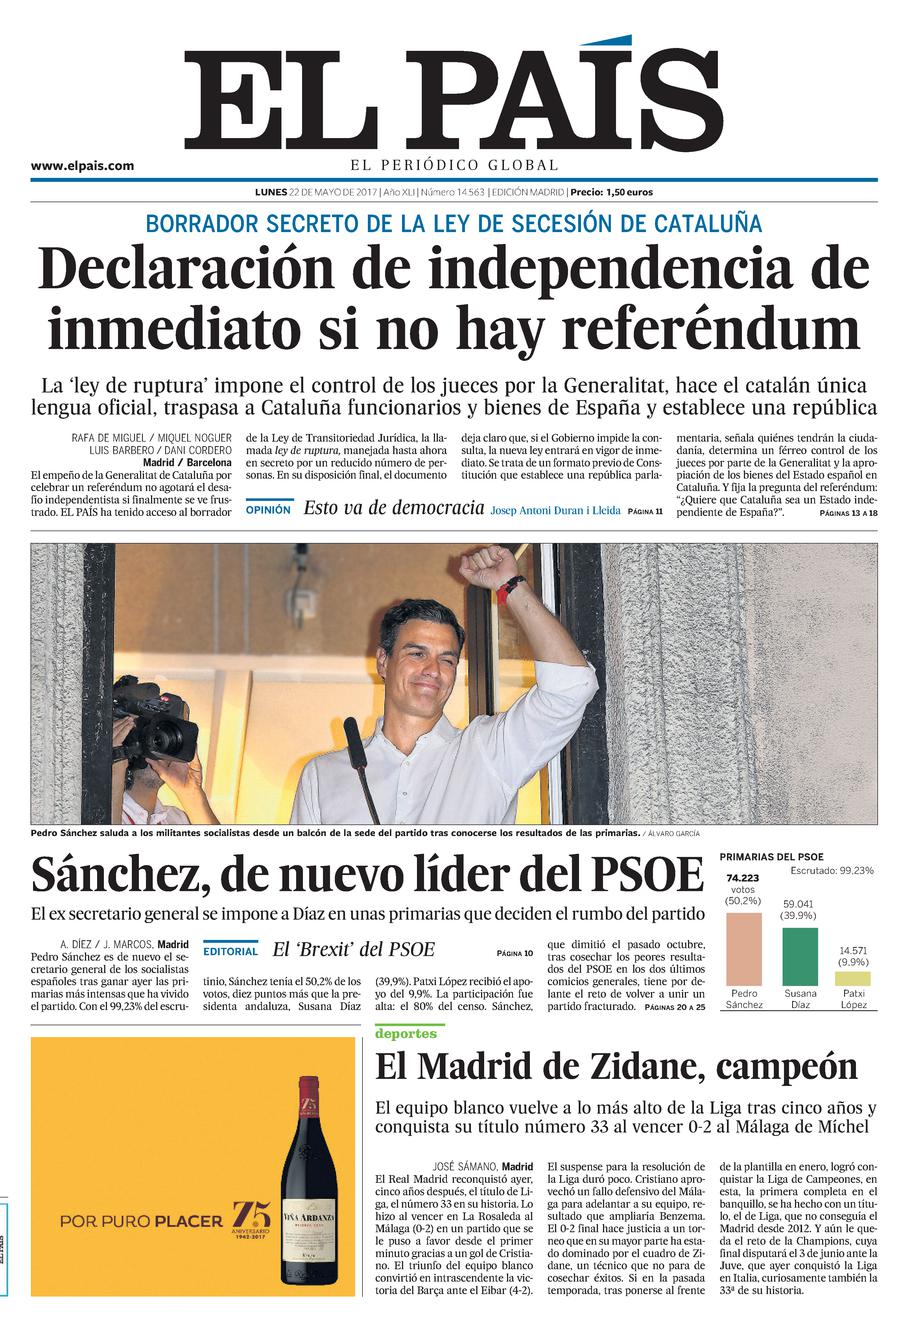 [HILO ÚNICO] Primarias del PSOE - Patxi López, Pedro Sanchez y Susana Diaz - Página 10 20170522Big